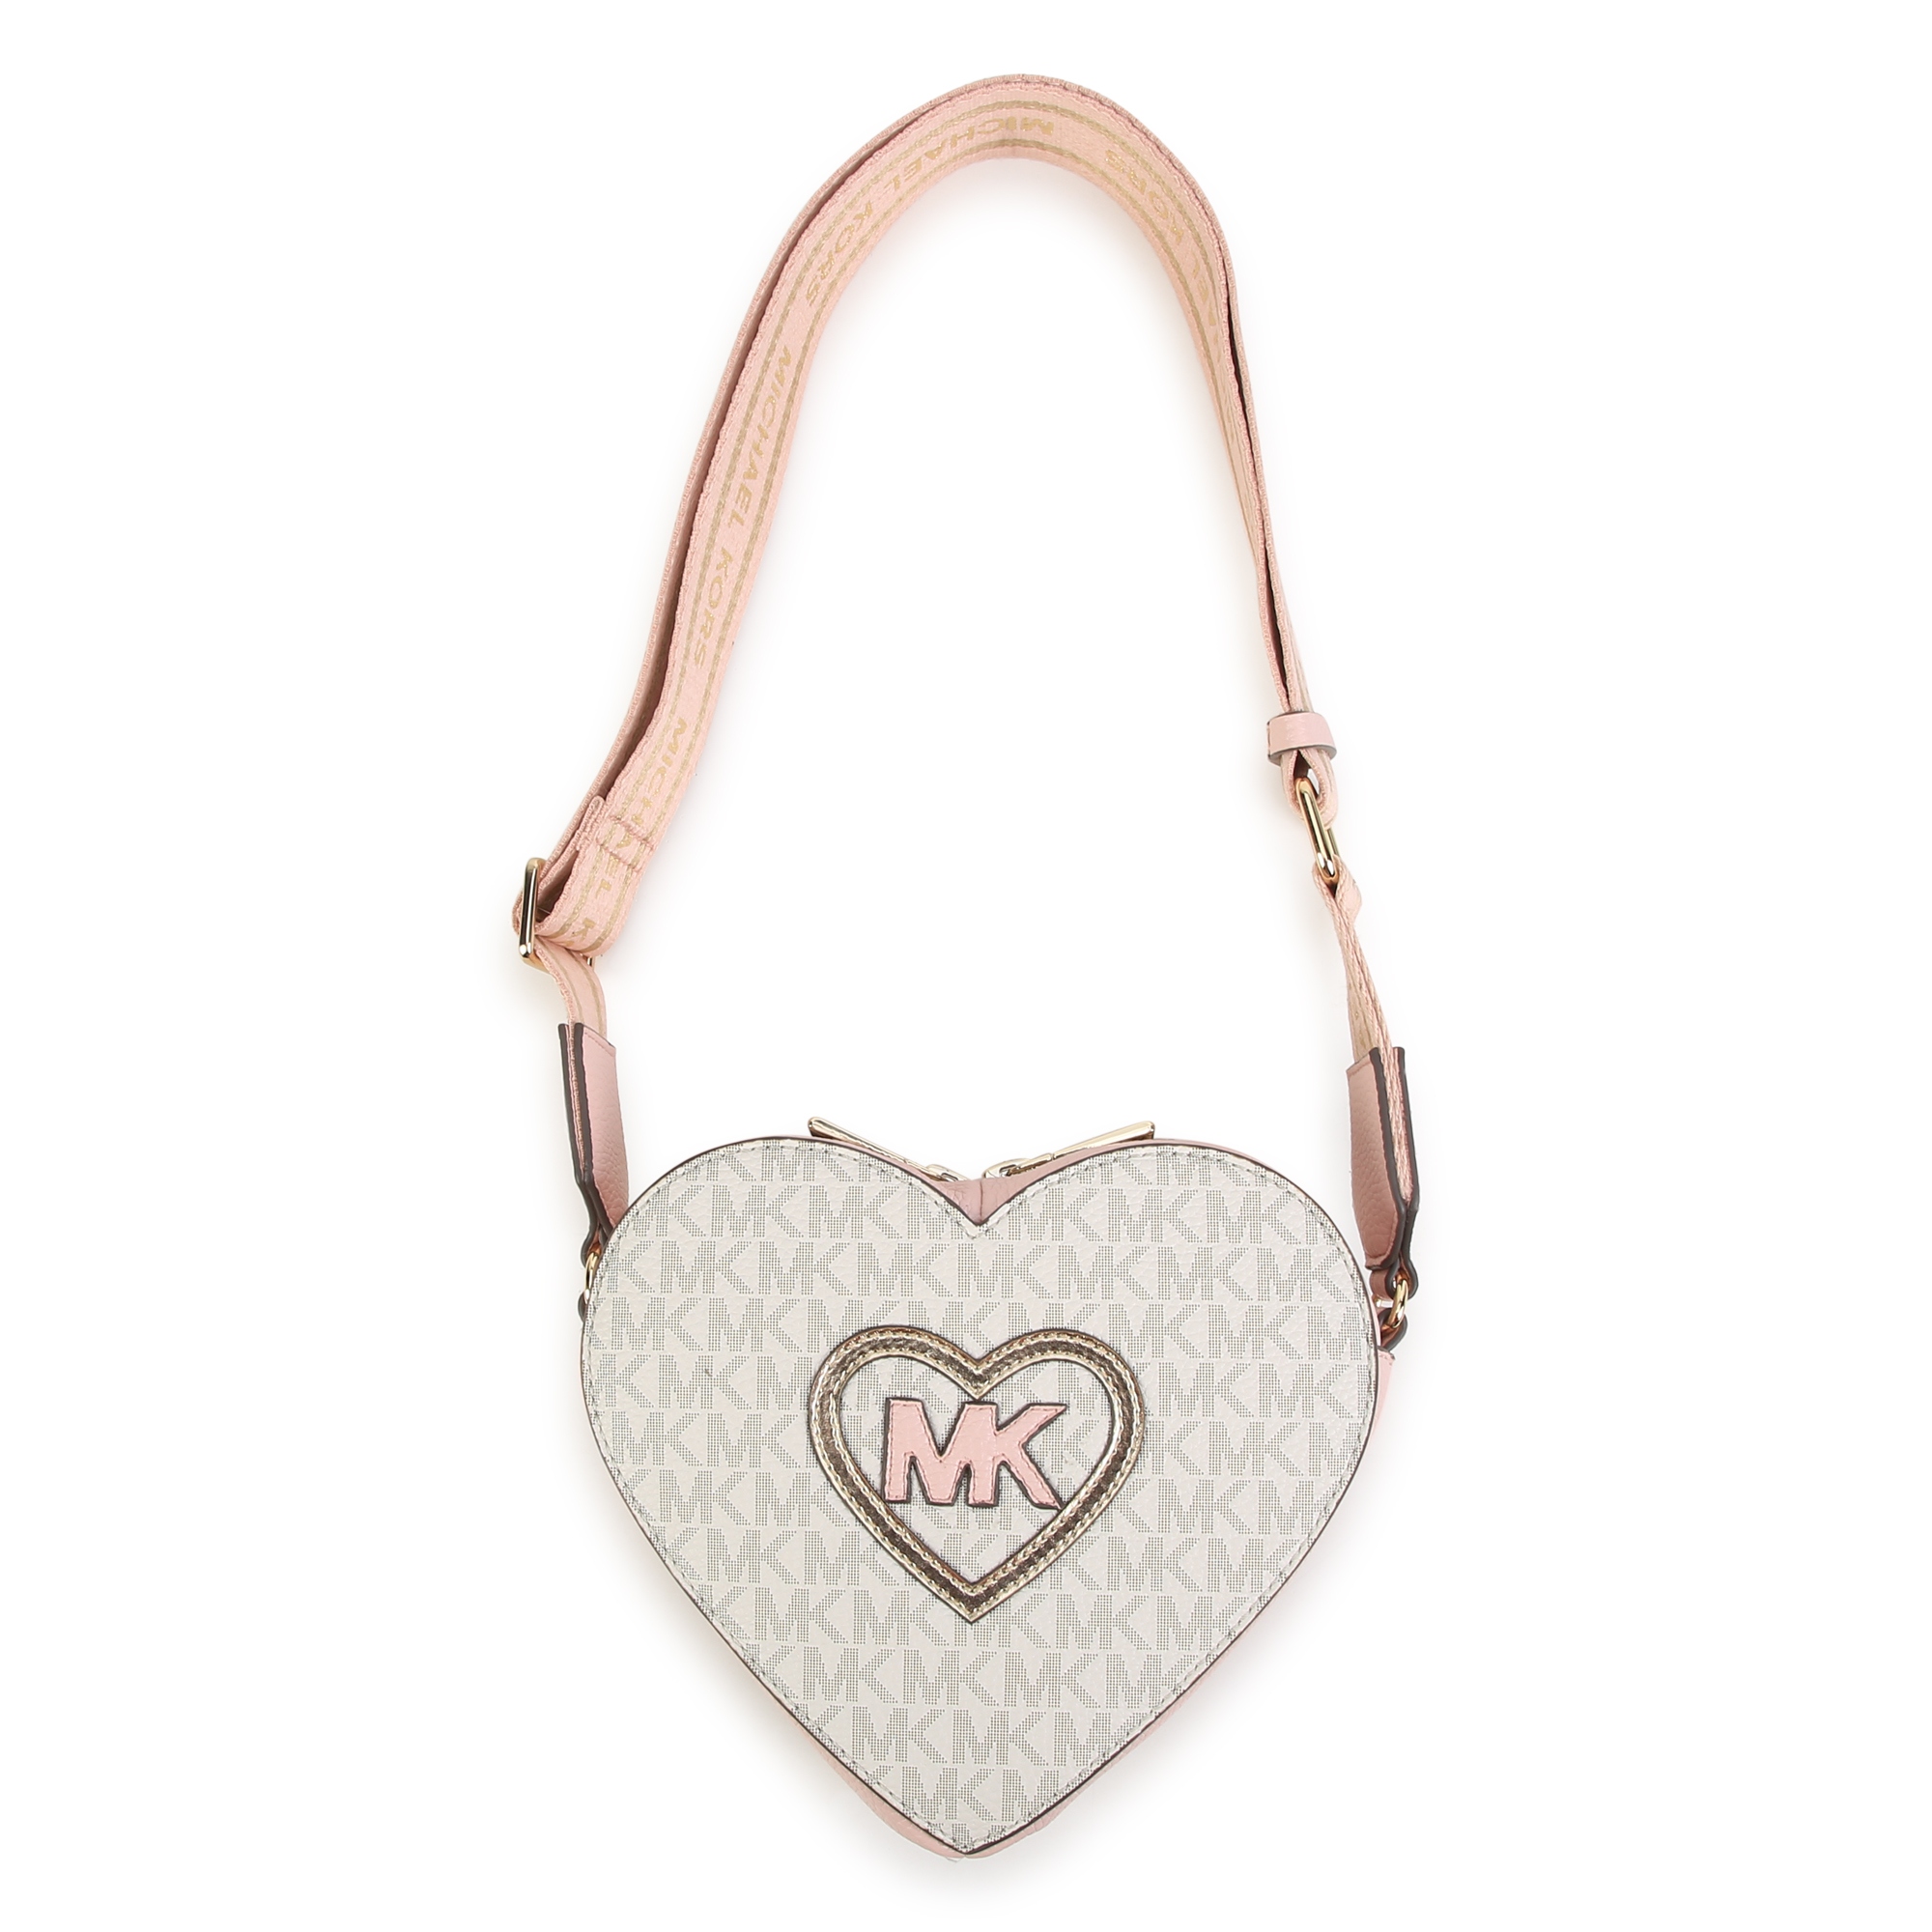 Heart-shaped handbag MICHAEL KORS for GIRL